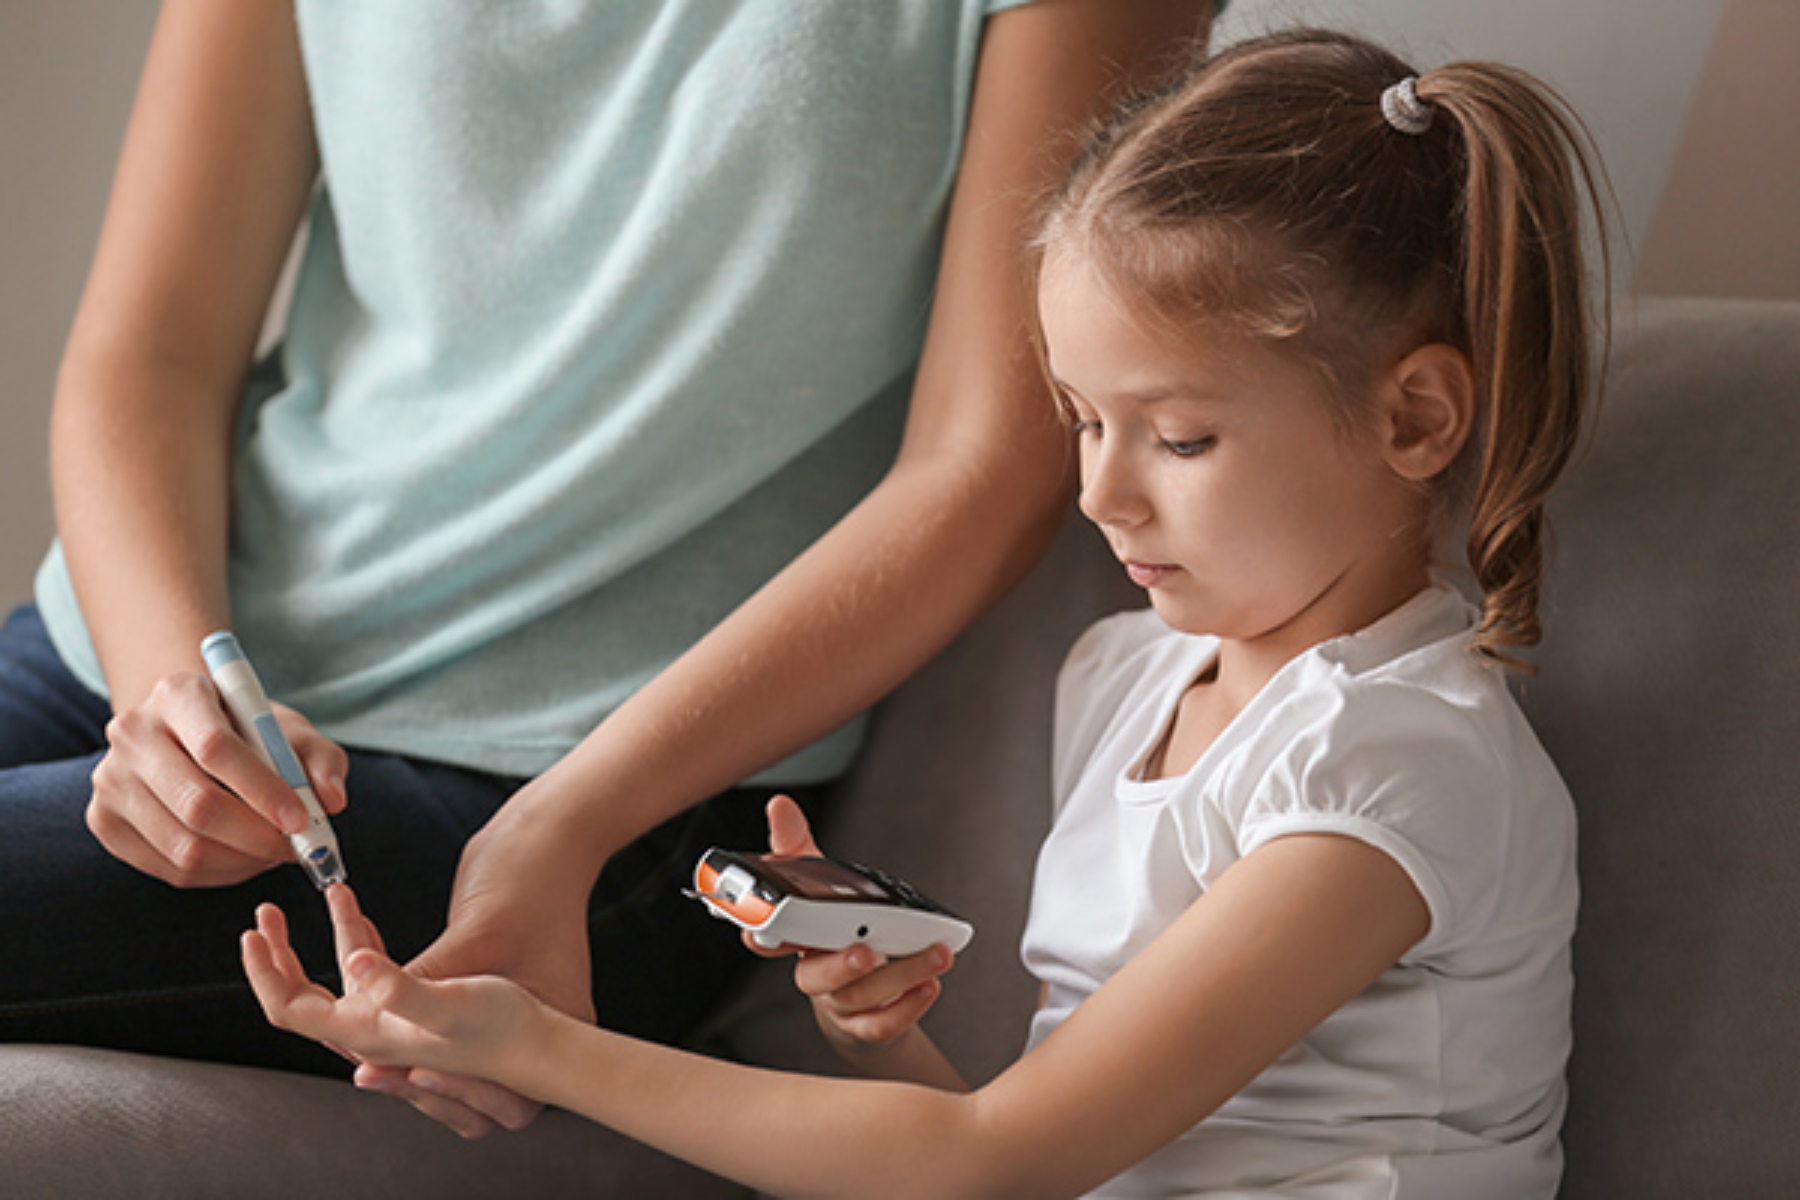 Παιδικός διαβήτης: Ποια είναι η σχέση μεταξύ της βιταμίνης D και του διαβήτη τύπου 1 στα παιδιά;